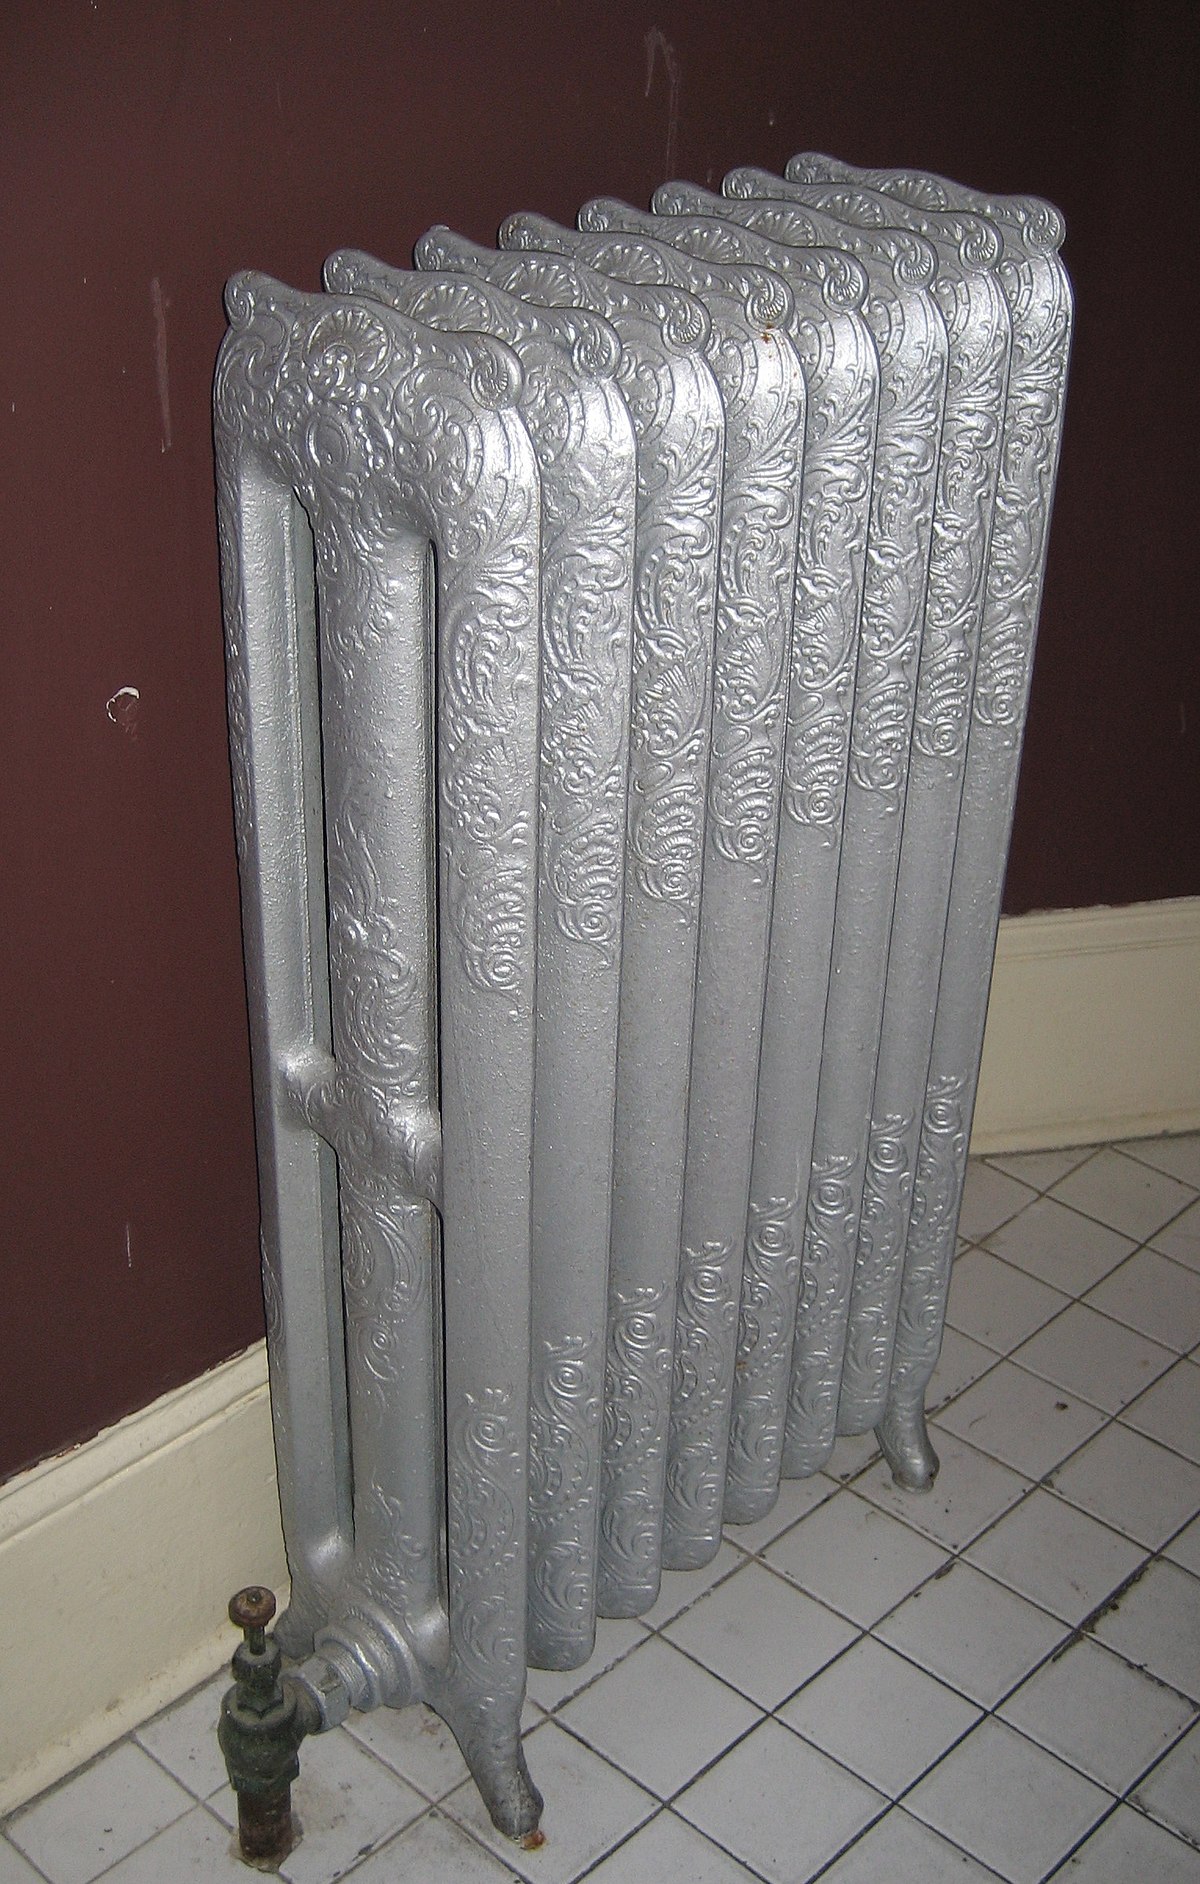 Es eficiente usar la misma caldera de gas de radiador y agua caliente?